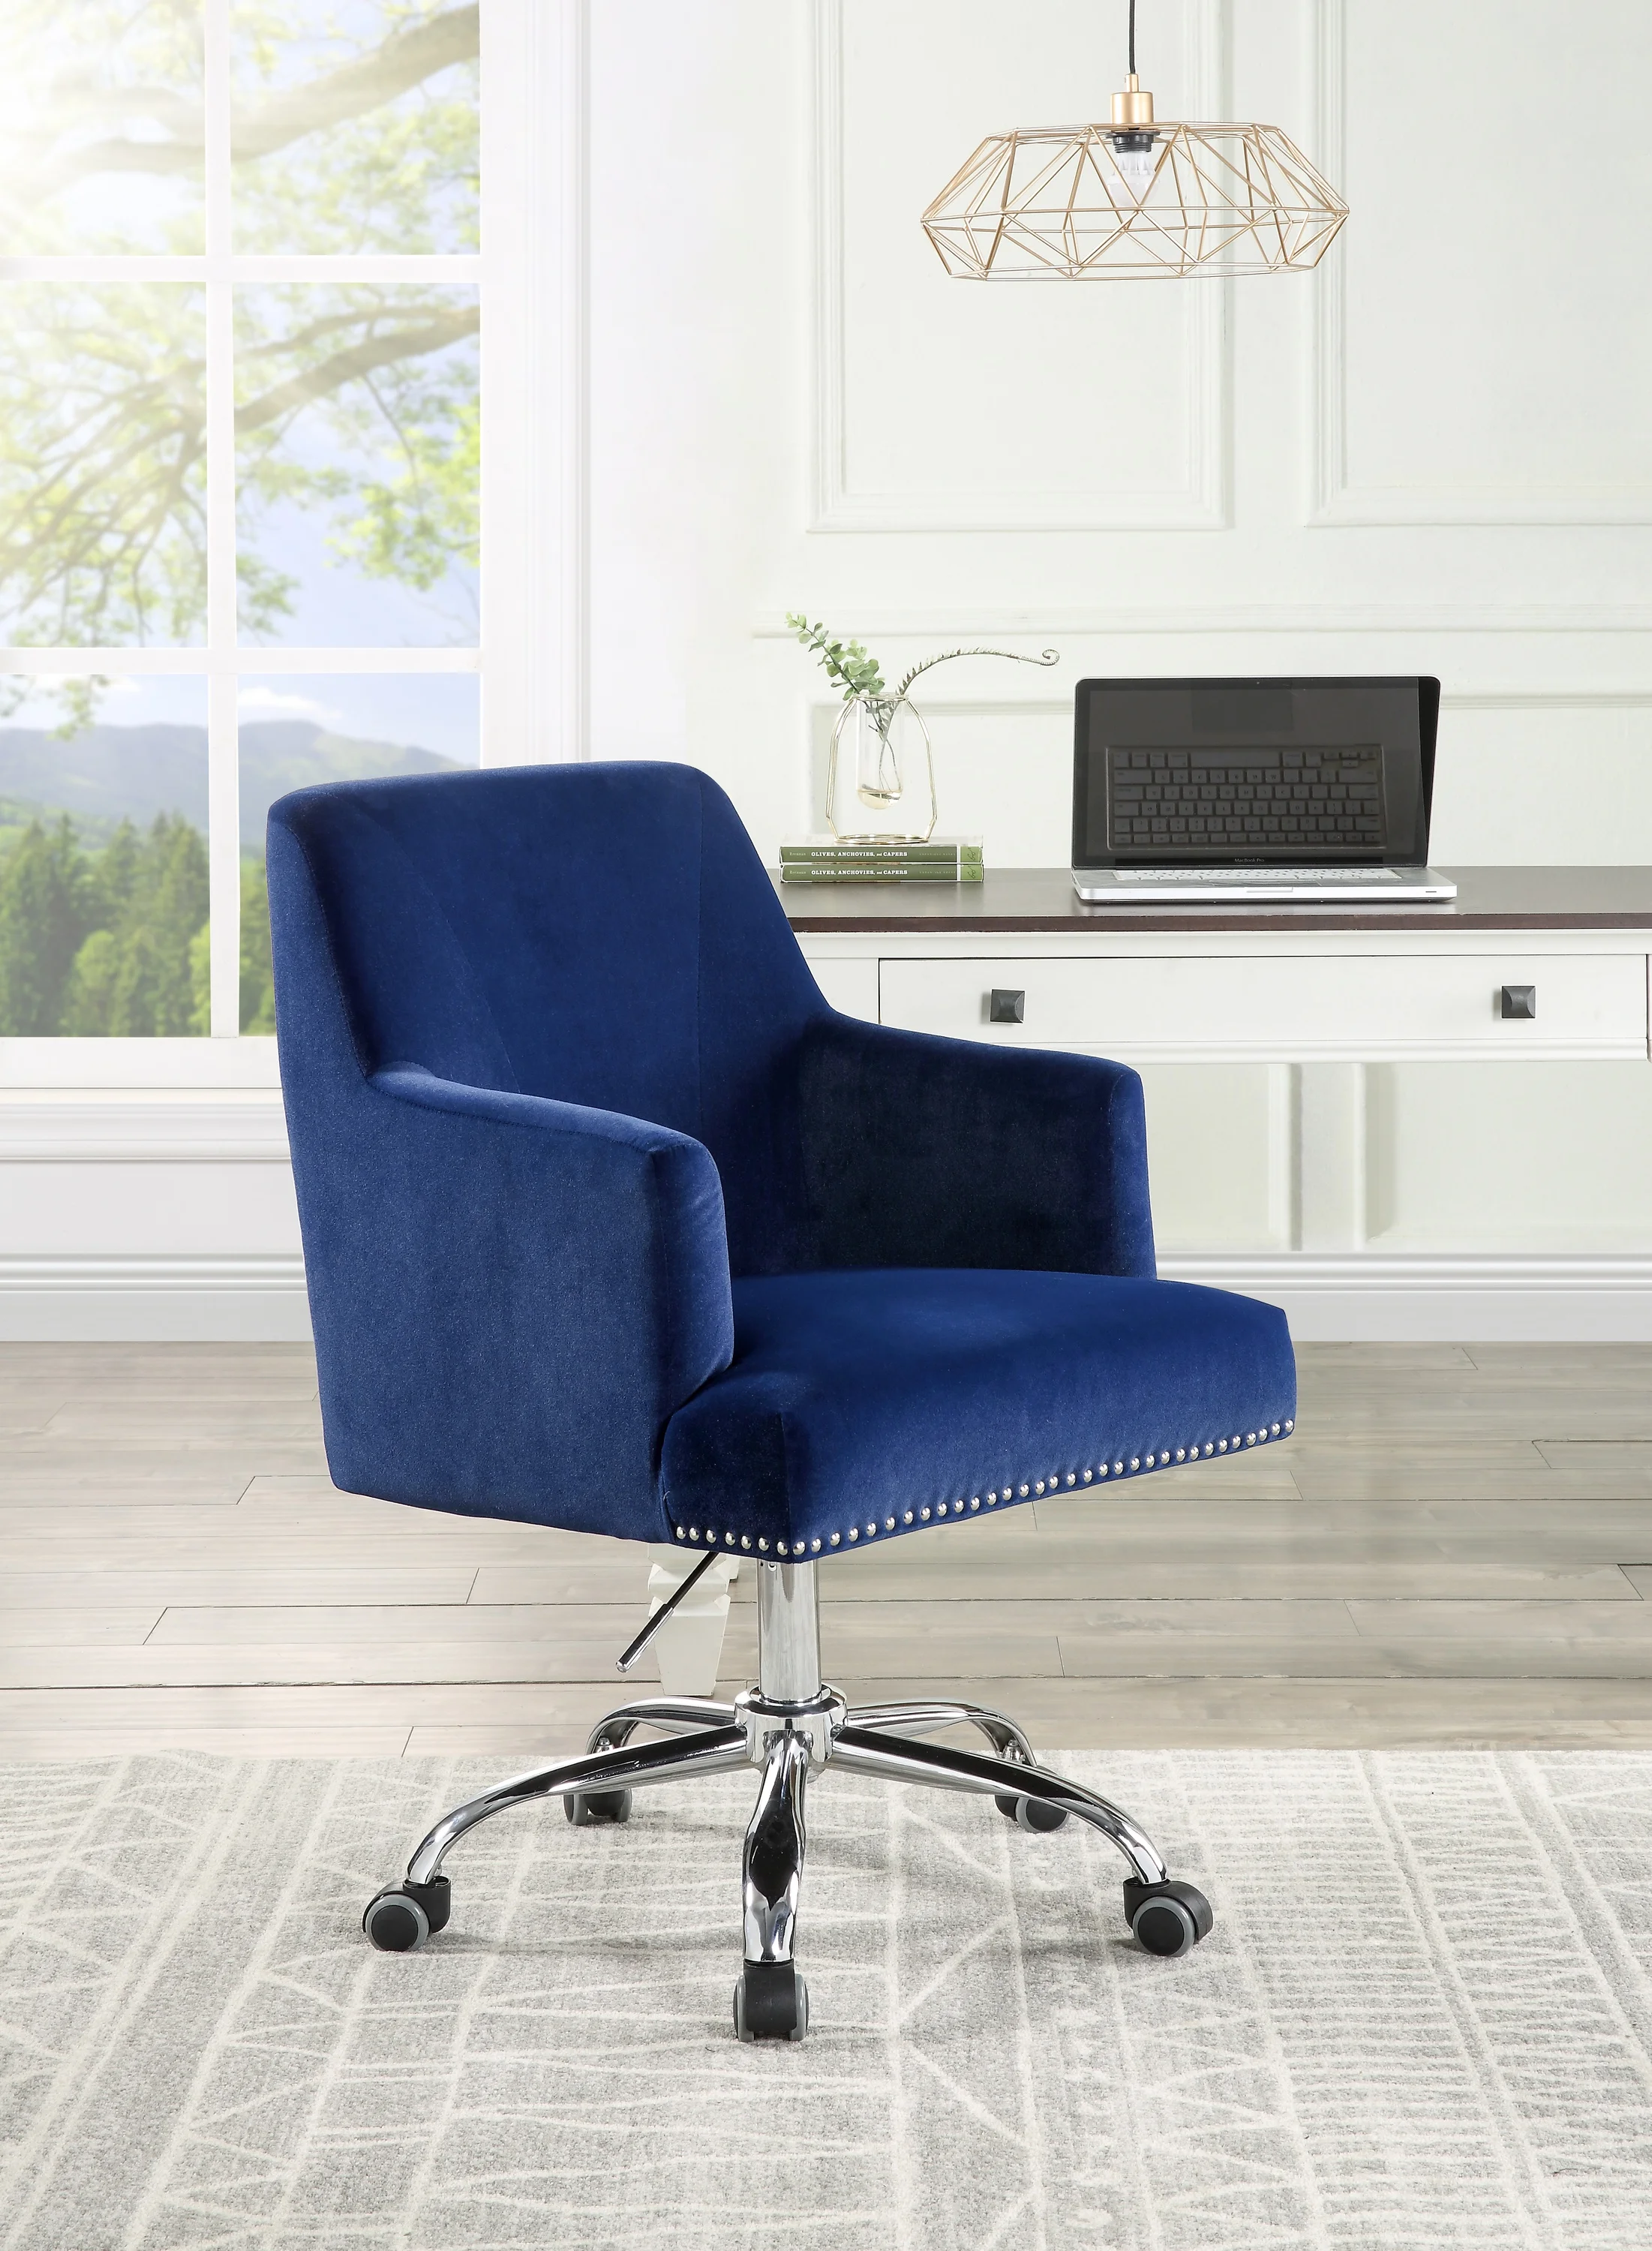 

Office Chair Blue Velvet Chrome Finish Room 360 Degree Swivel Roller Upholstered High Elastic Sponge Leather Fabric Comfortable